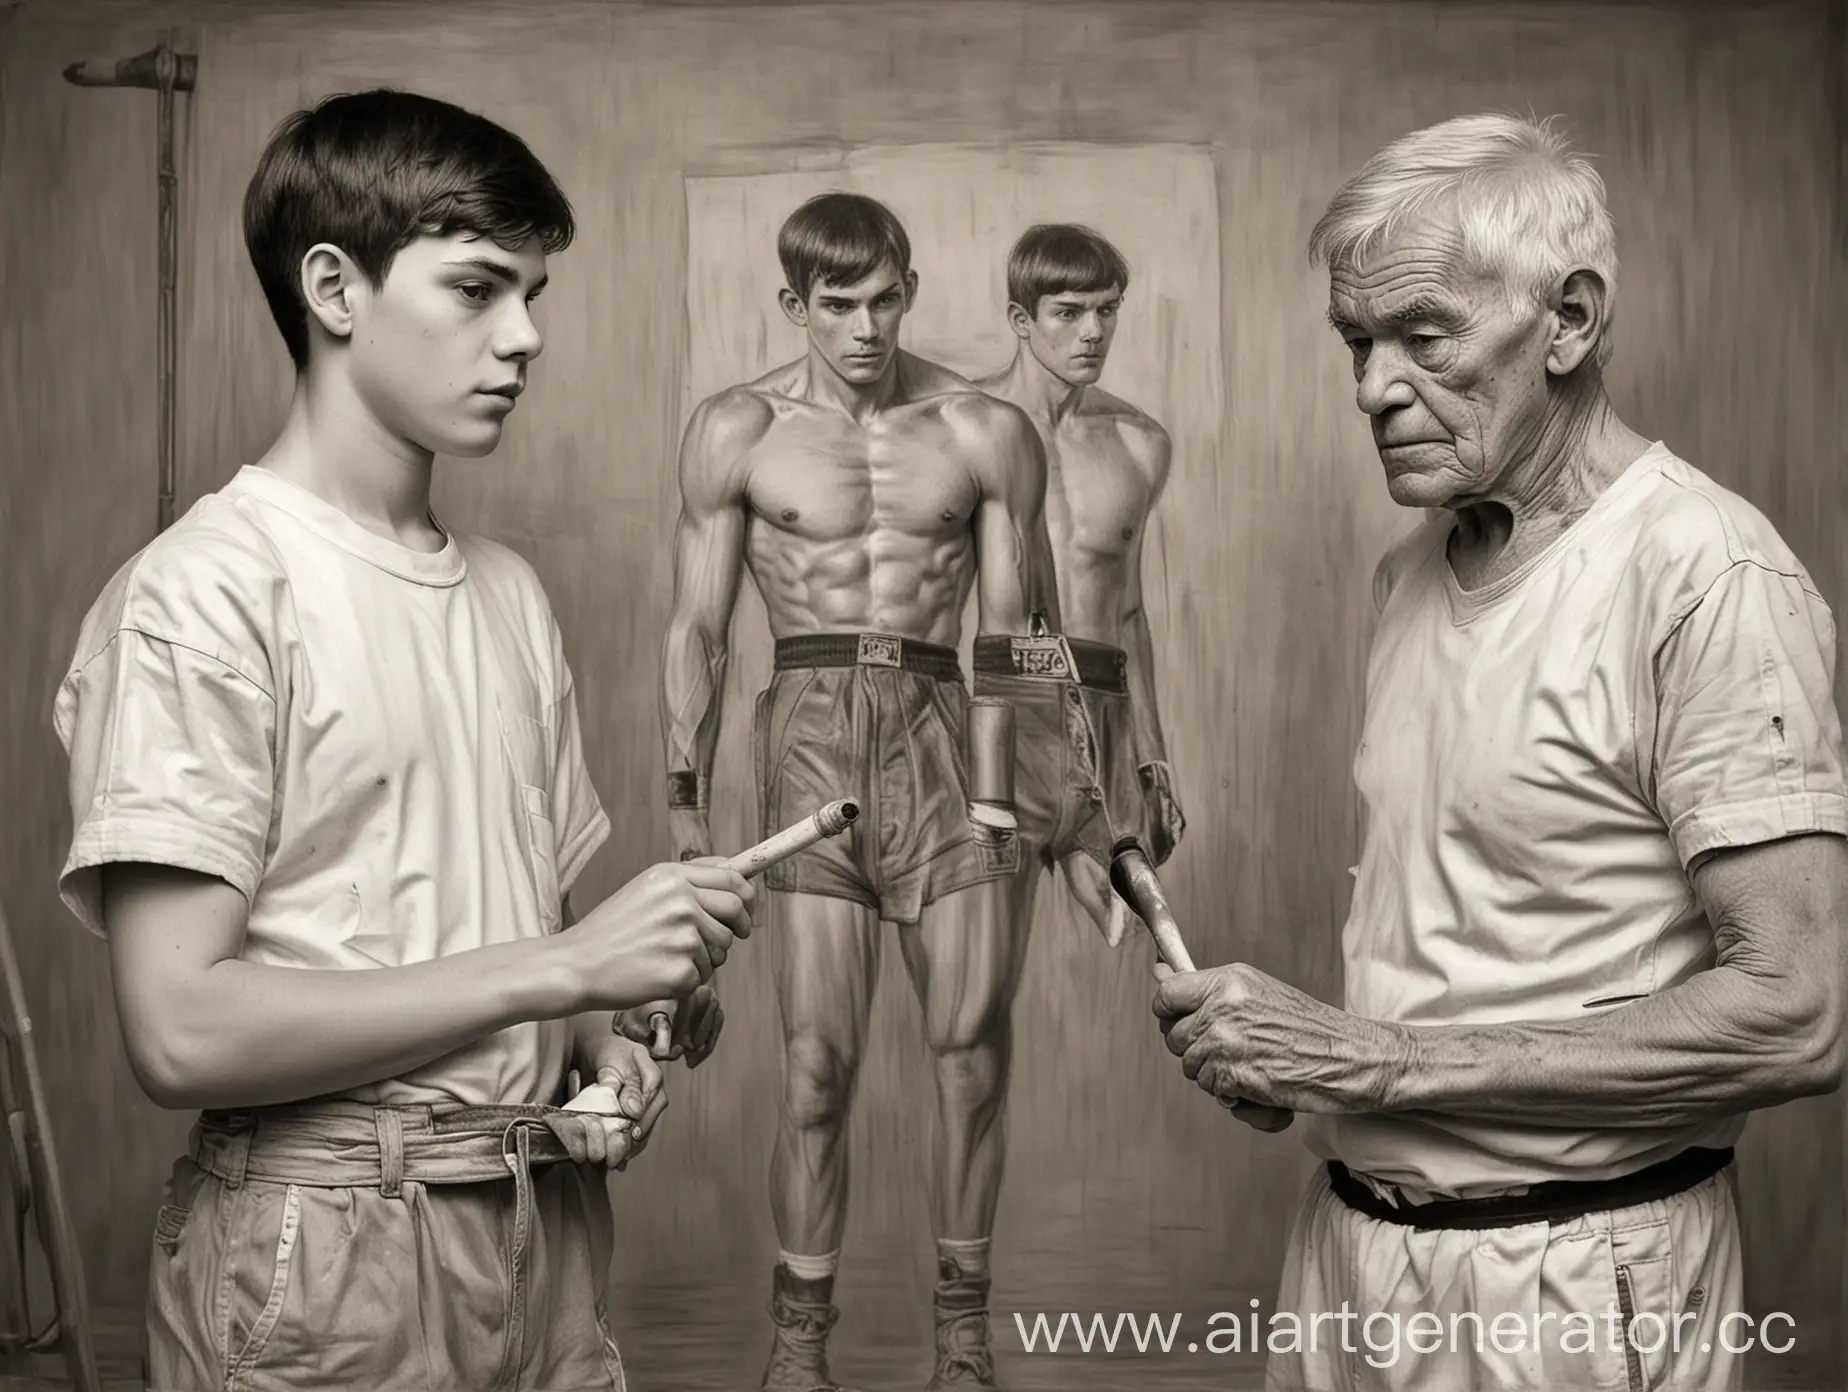 16 jähriger junge in malerbekleidung und mit malerrolle in der hand steht gegenüber einem 70 jährigen ehemaligen boxer. Schwarzweißes Bild mit Bleistift gezeichnet.